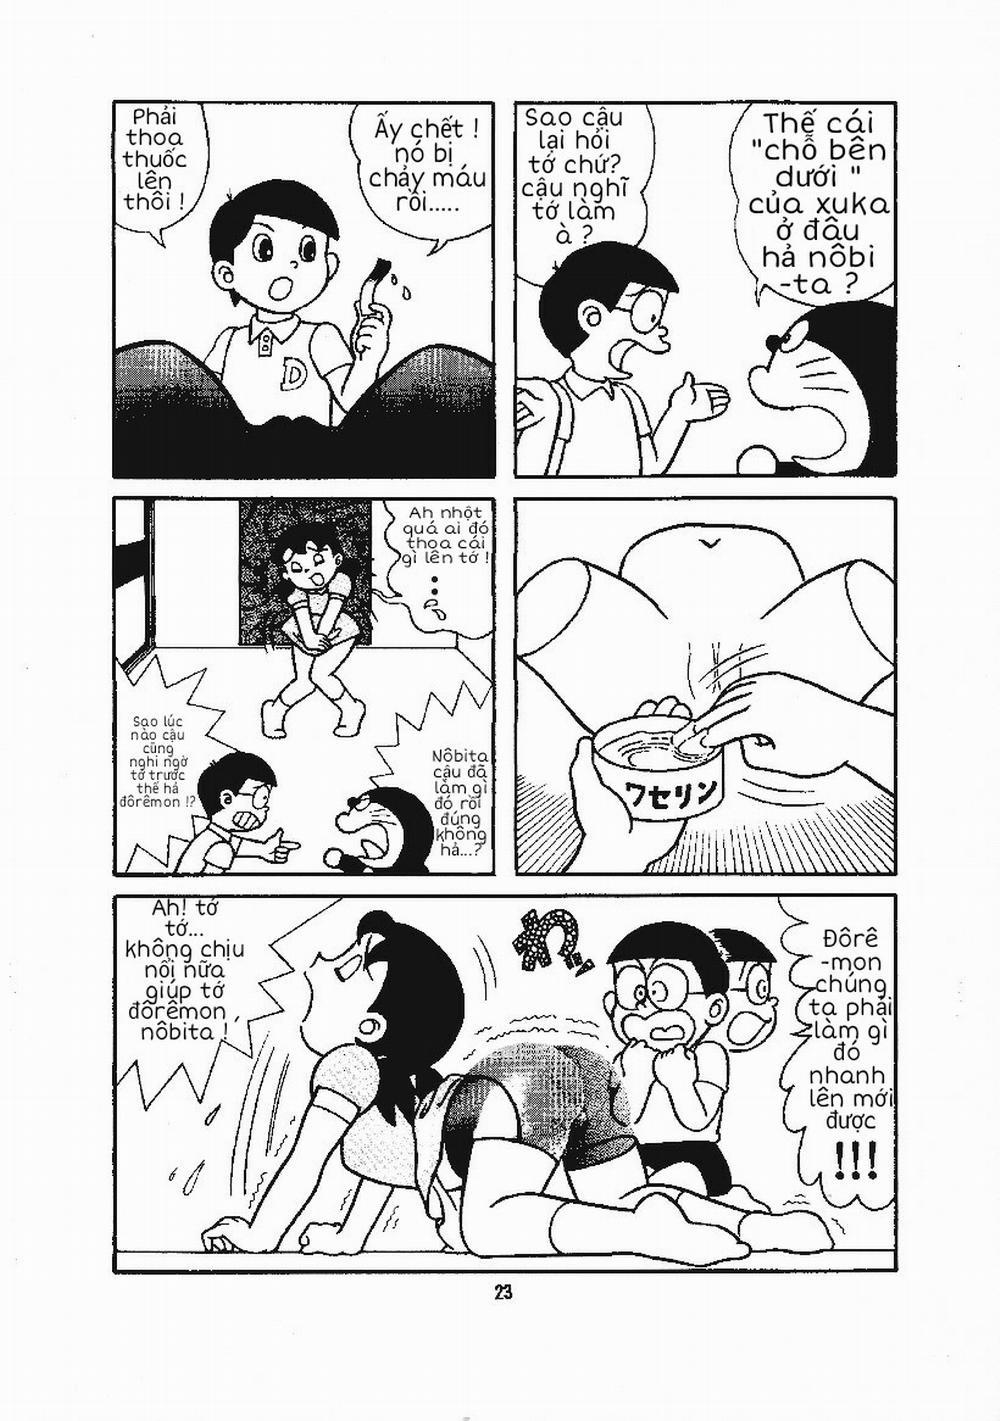 Tuyển Tập Doraemon Doujinshi 18+ Chương 15 B n d i c a Xuka Trang 7